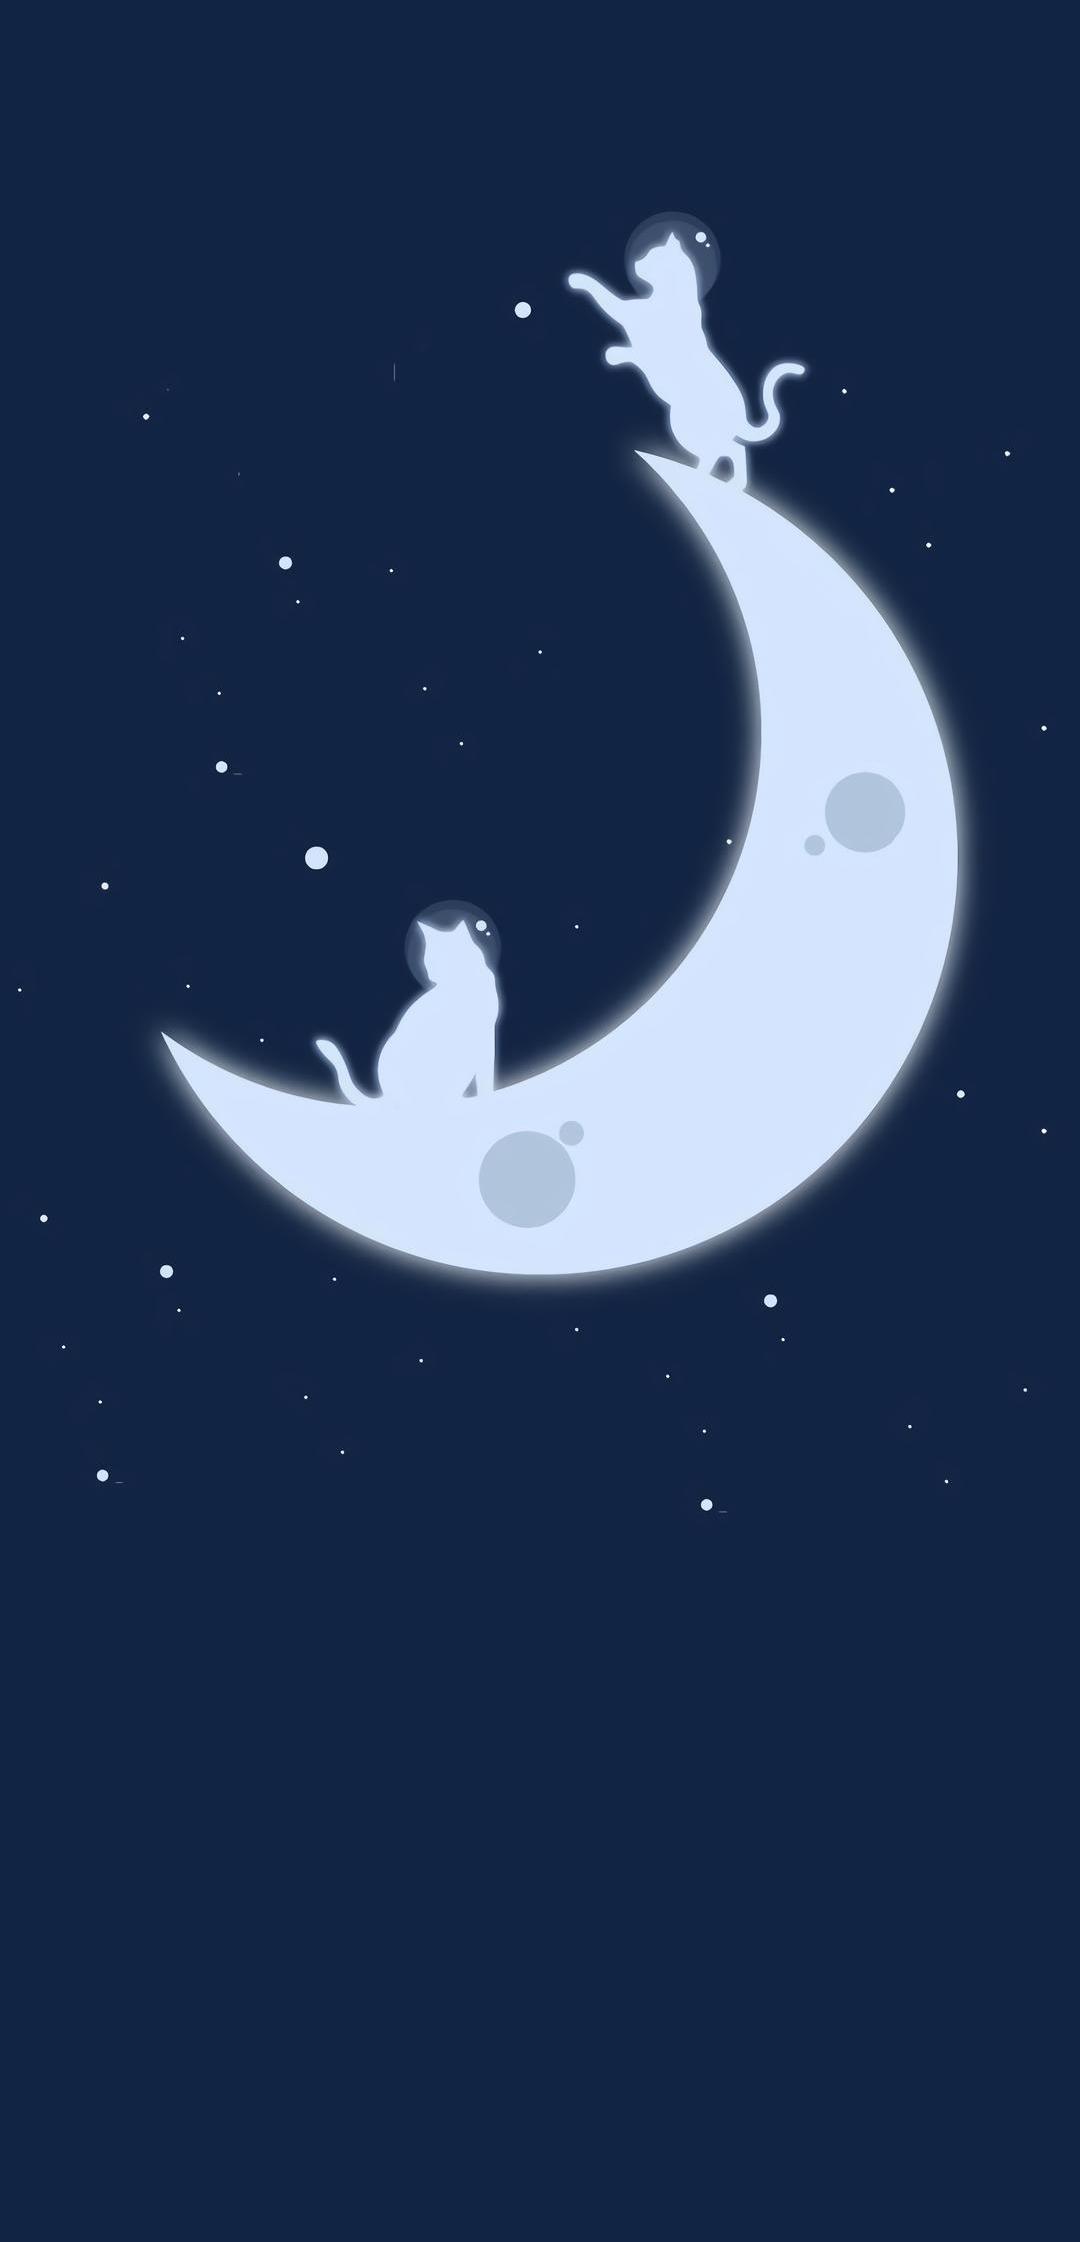 在月亮上玩耍的猫咪